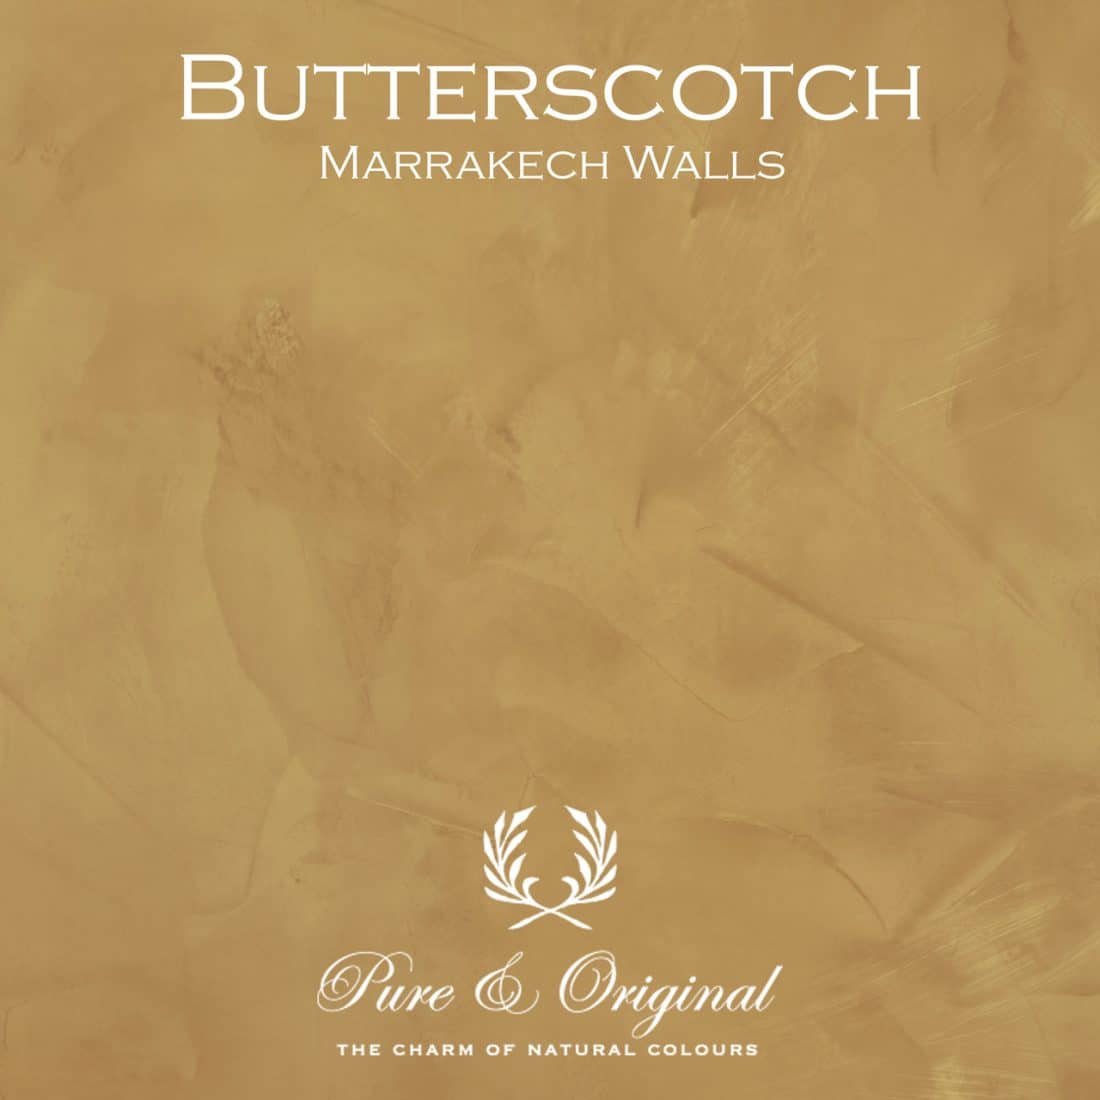 Butterscotch Marrakech Walls Pure Original